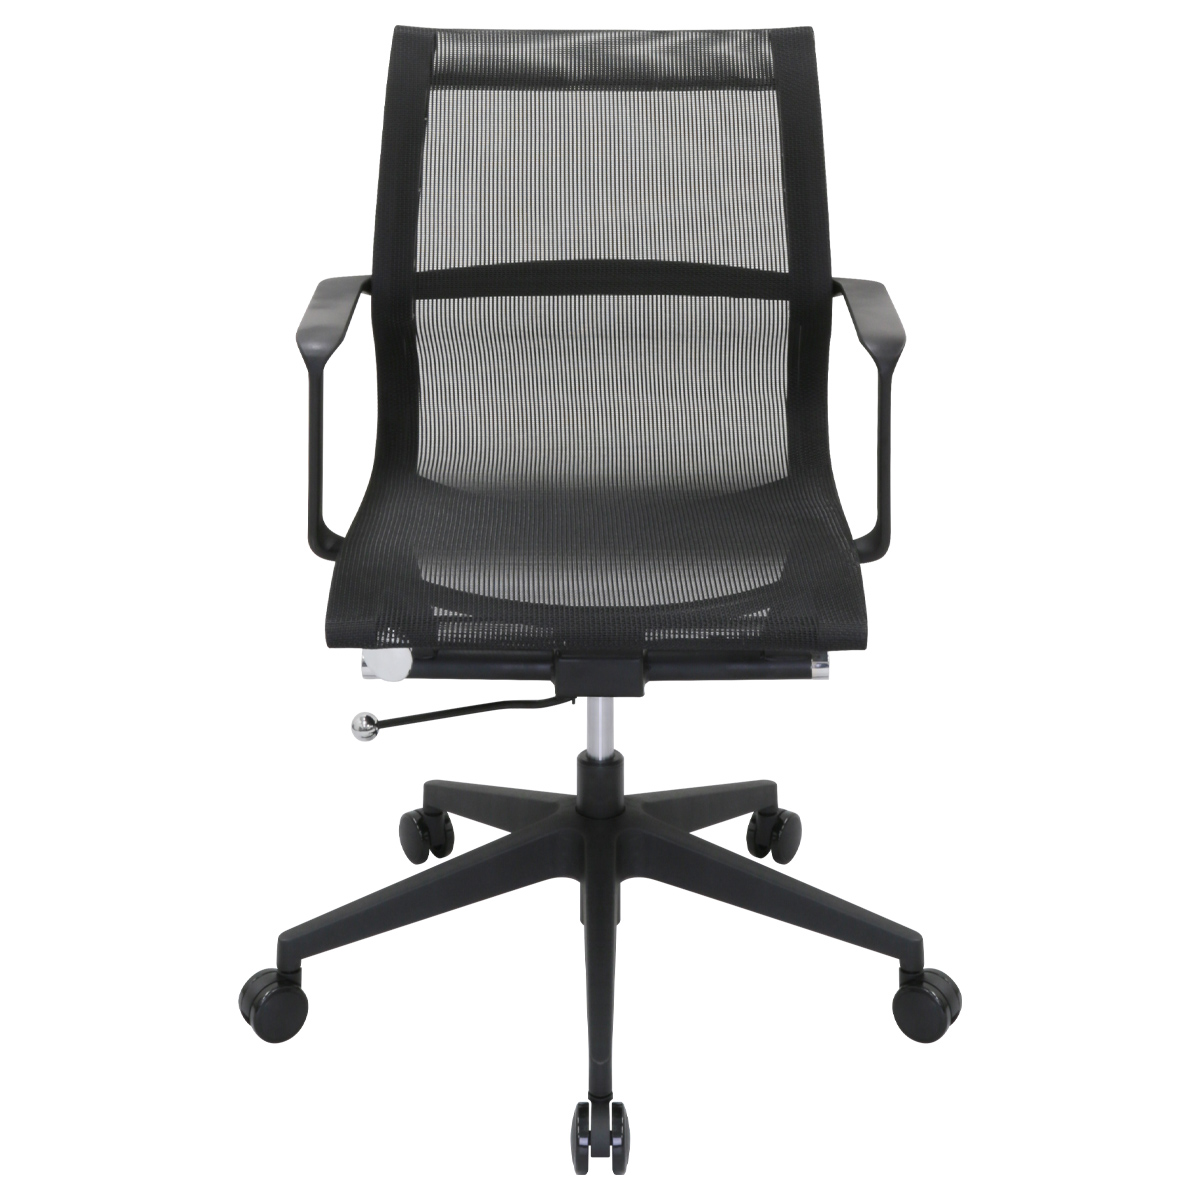 ビジネスチェアLU メッシュタイプ 幅560 奥行675 高さ900-1000 LU-6824M-BK 通販 オフィスチェア・事務椅子  オフィス家具のカグクロ